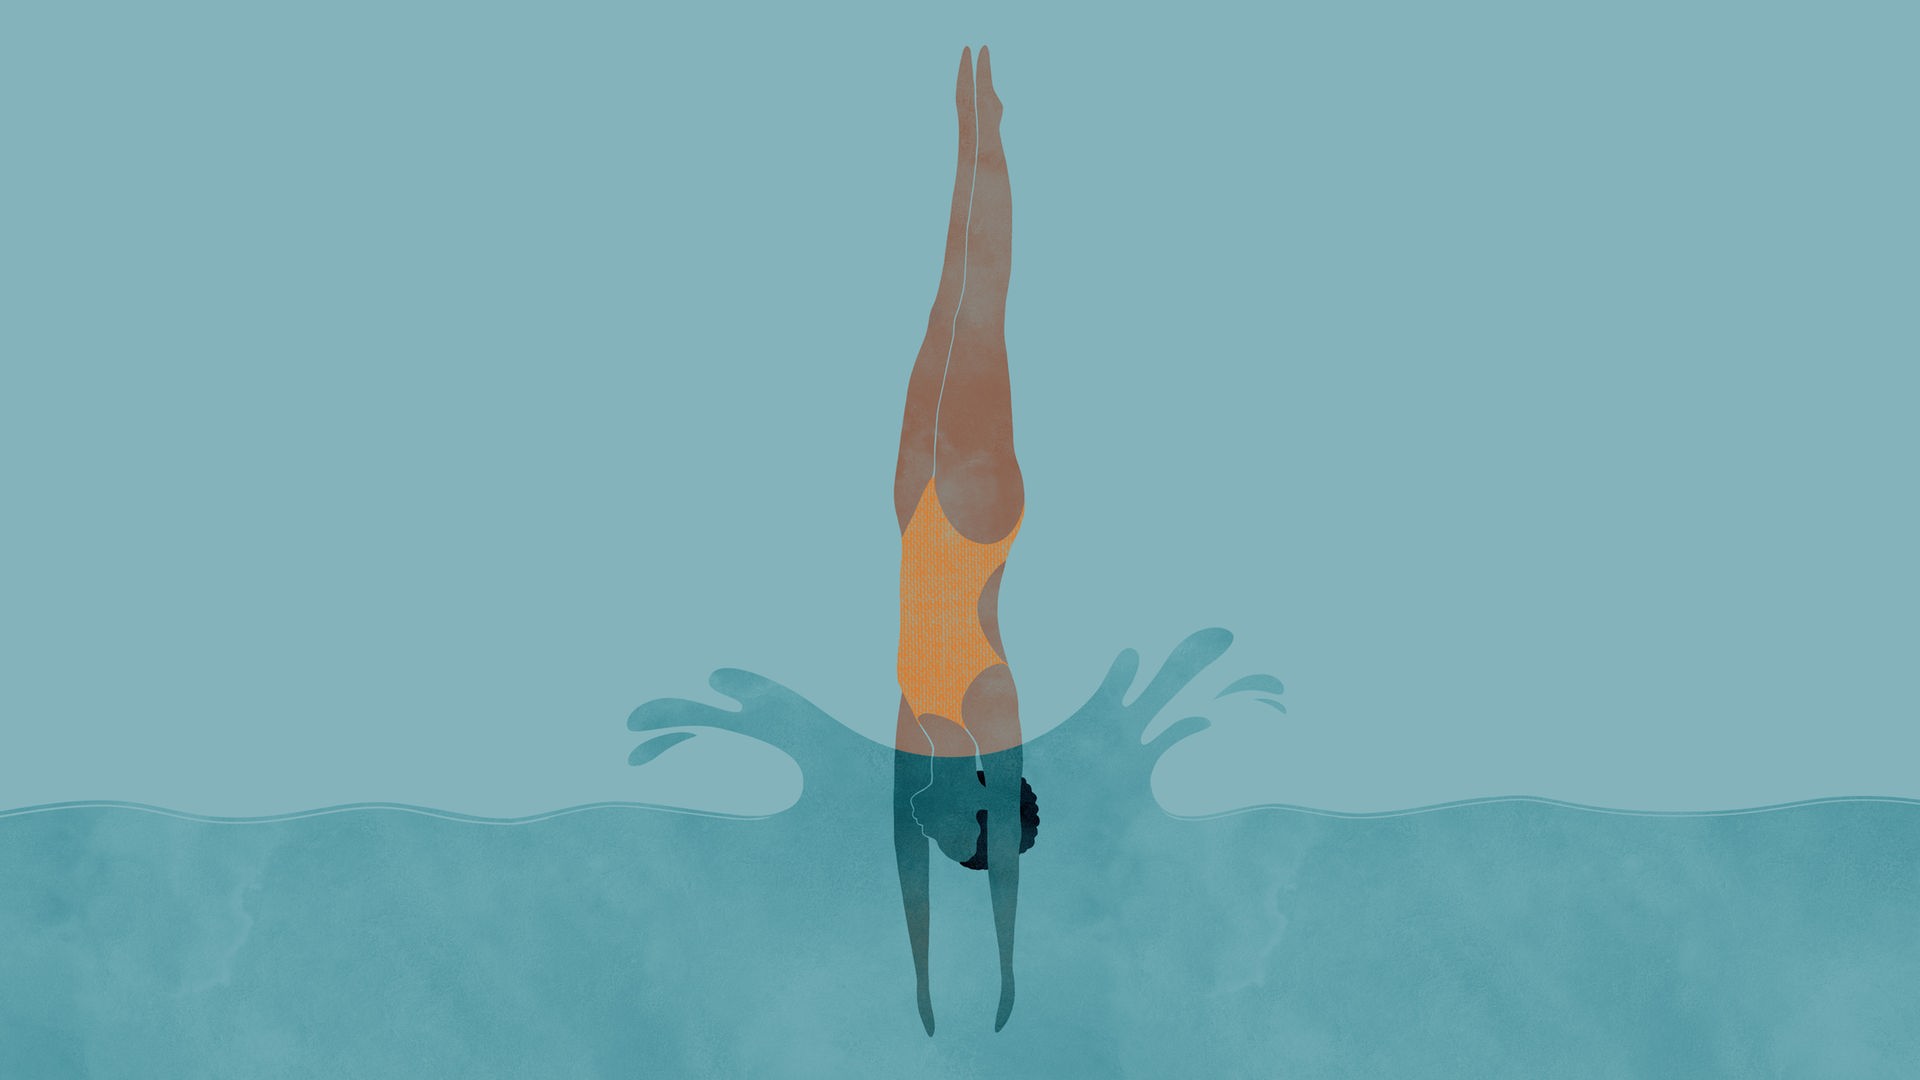 Die Turmspringerinnen: Die Zeichnung zur Episode 6 des Podcasts zeigt eine Turmspringerin, die am Ende ihres Sprungs gestreckt kopfüber ins Wasser eintaucht.